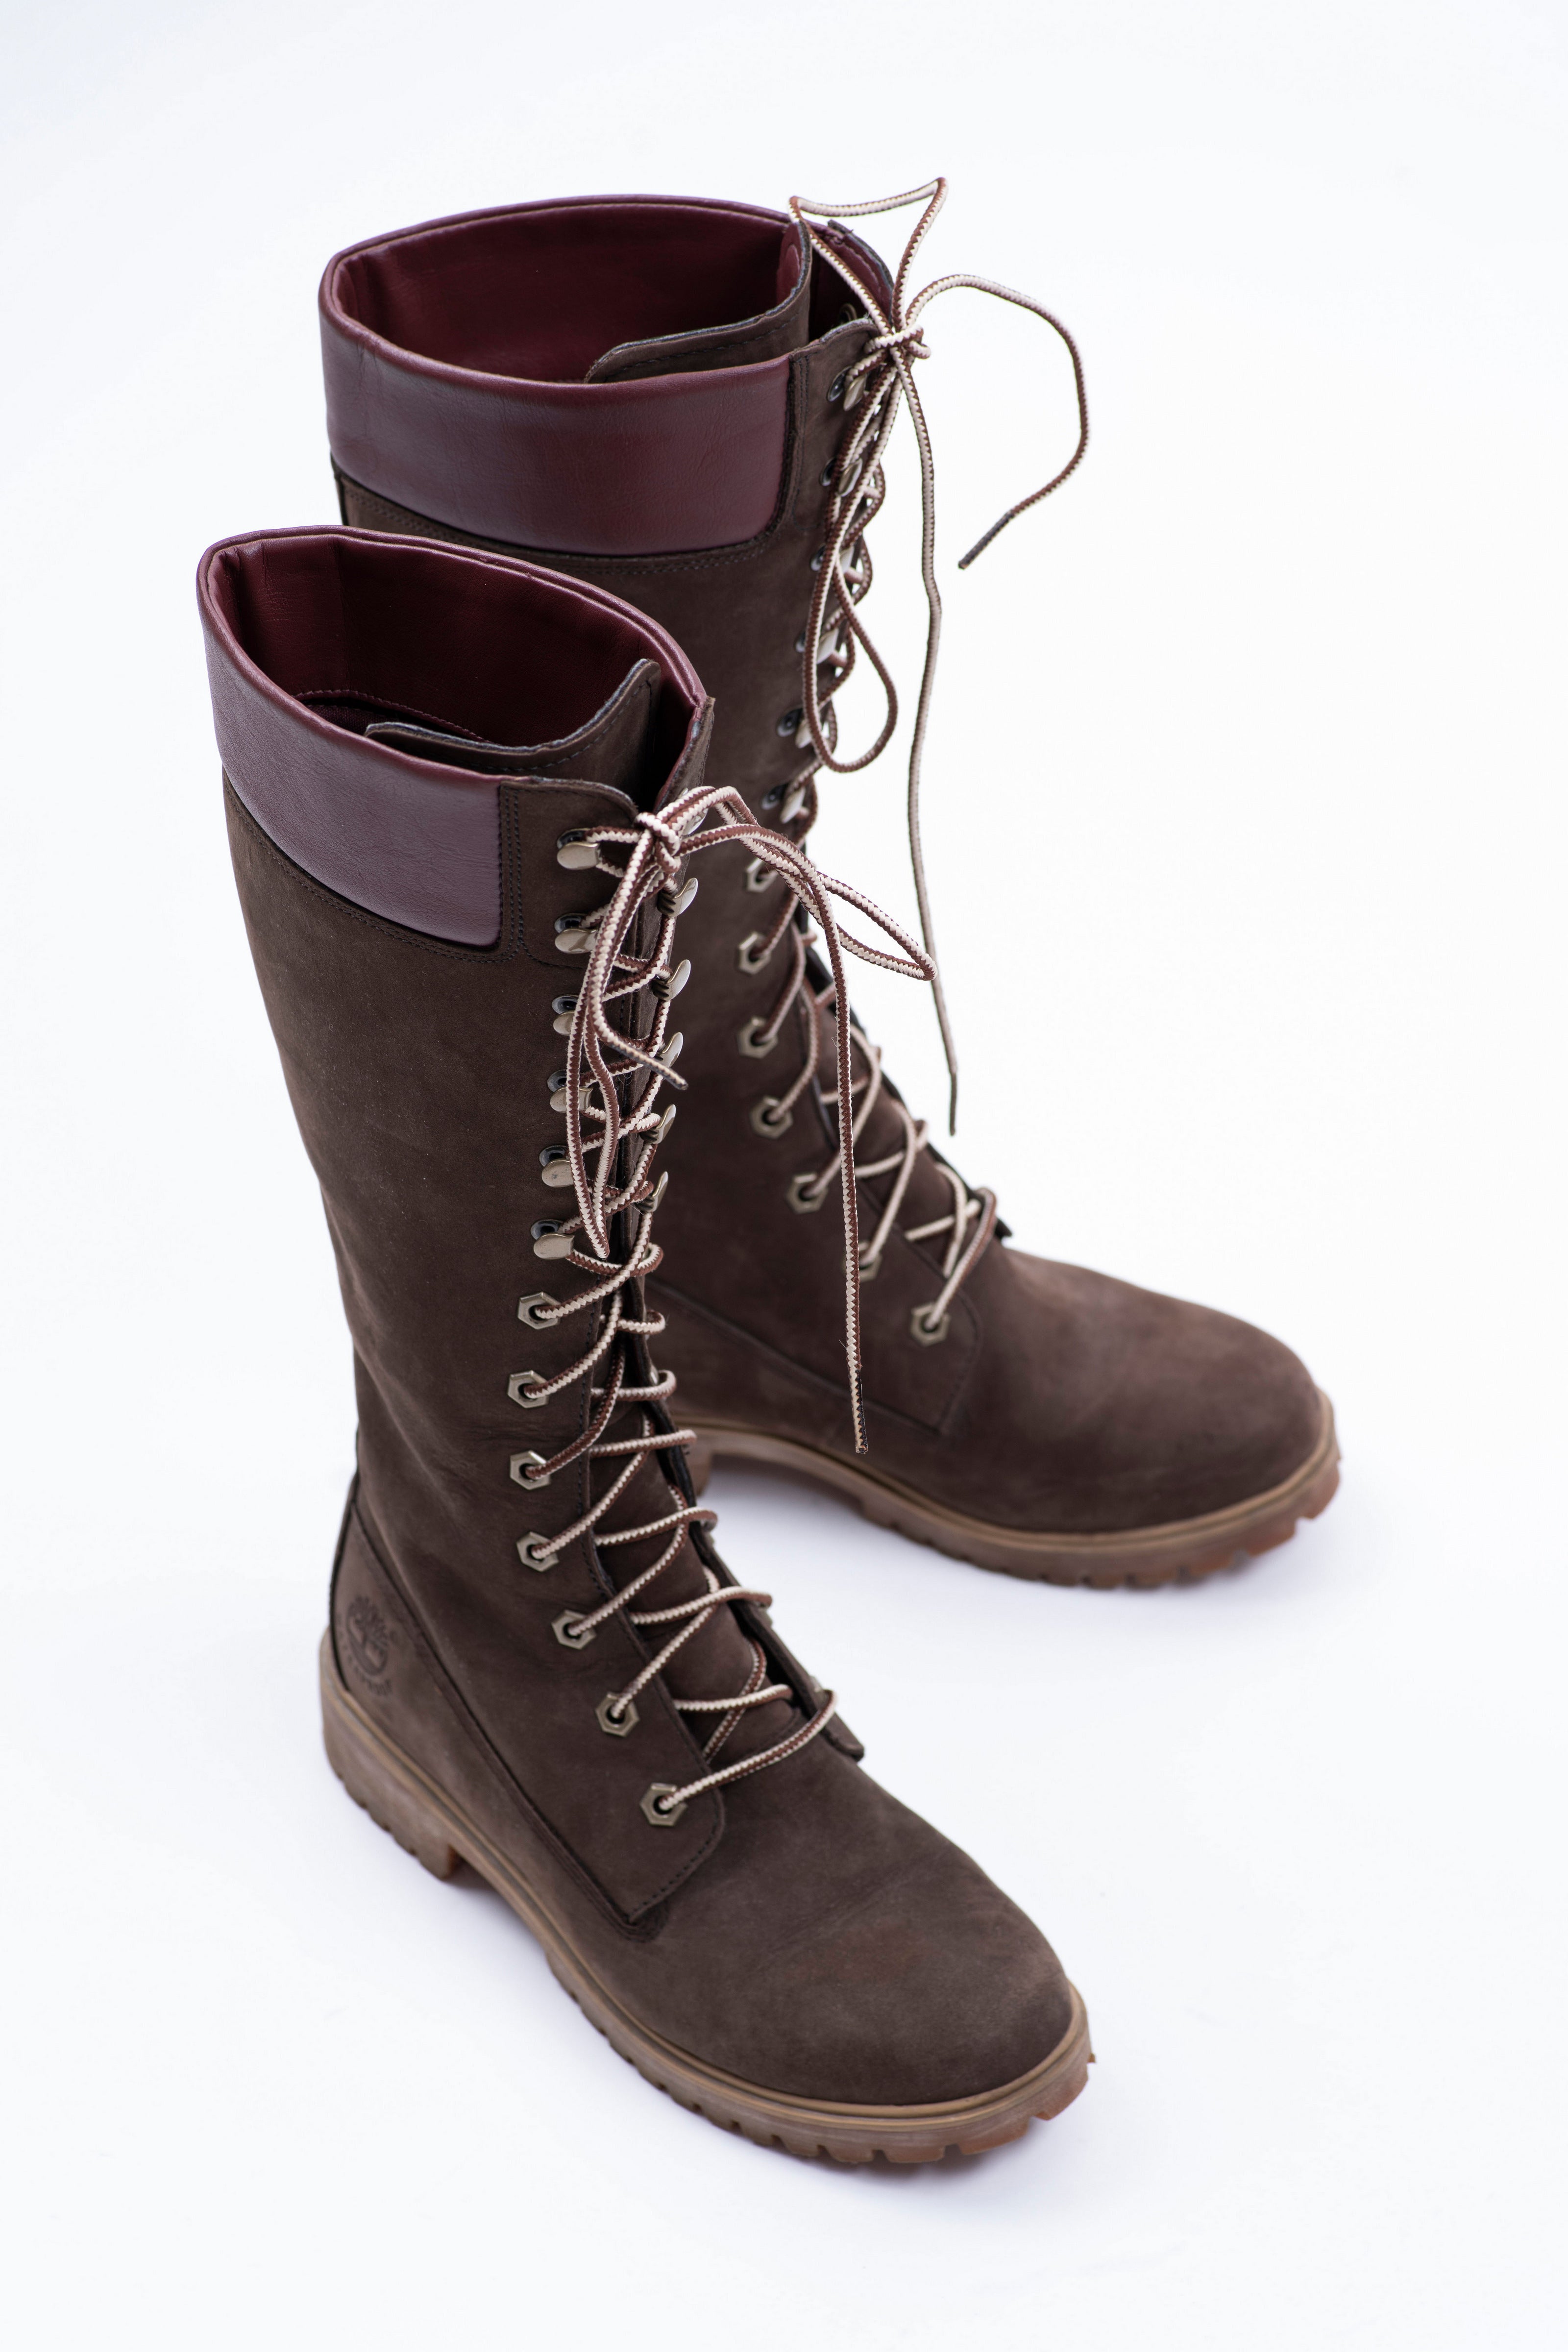 omvatten Tegenstander Uitgaan van Timberland Premium Women's 14inch Knee High Brown Boots, EU 36, USA 5. –  SecondFirst